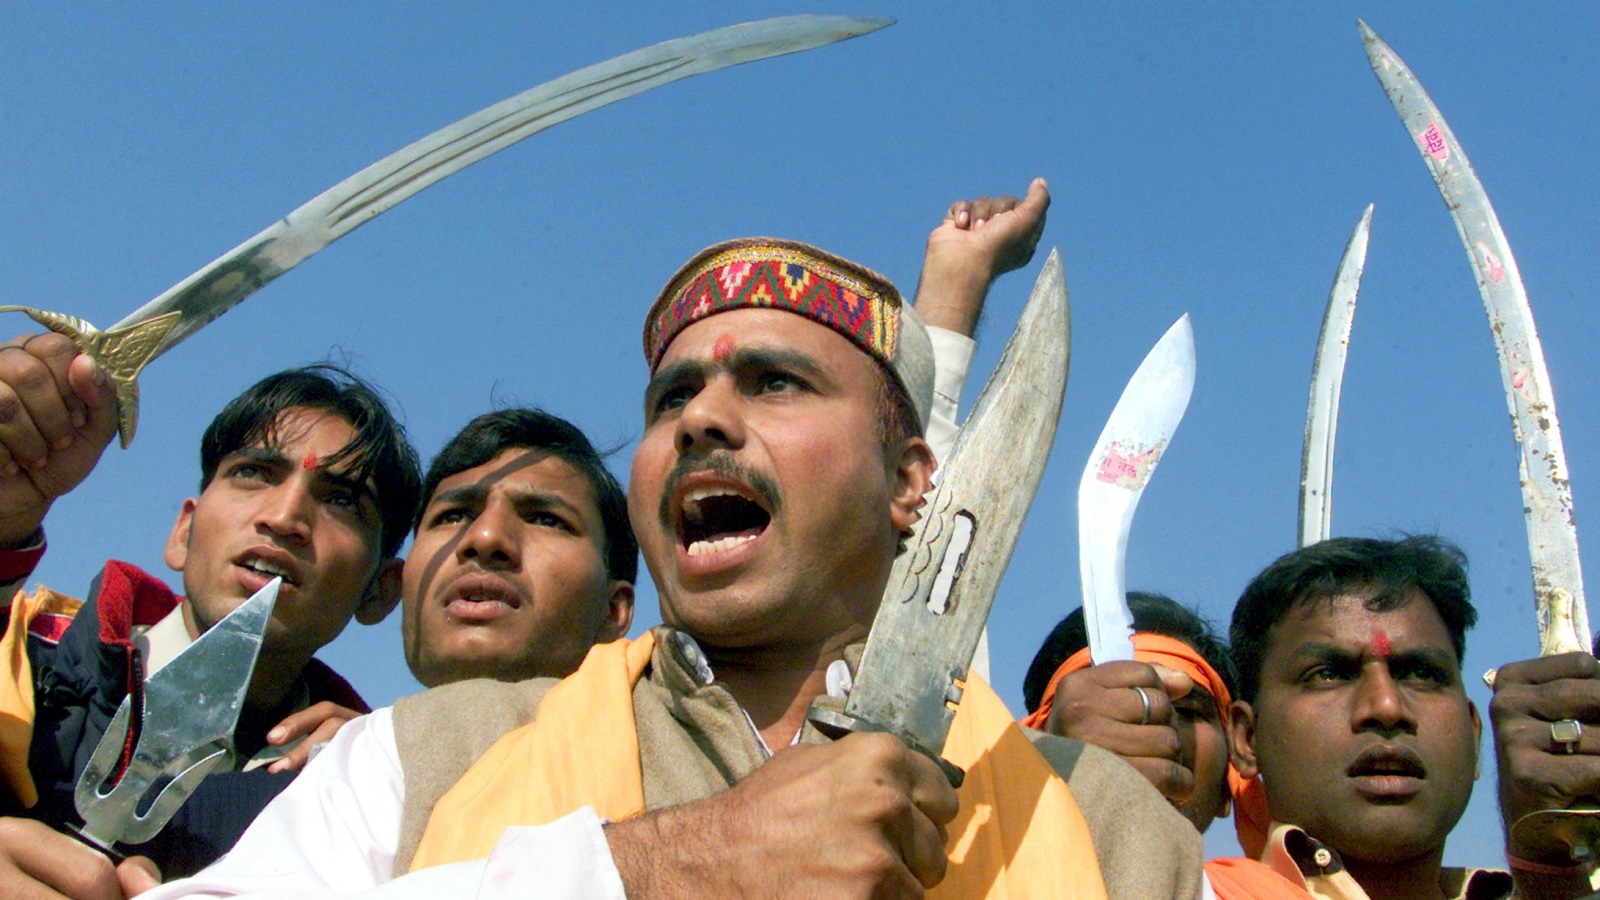 ‪الميليشيات الهندوسية المتطرفة تهدد التعايش‬ (رويترز)